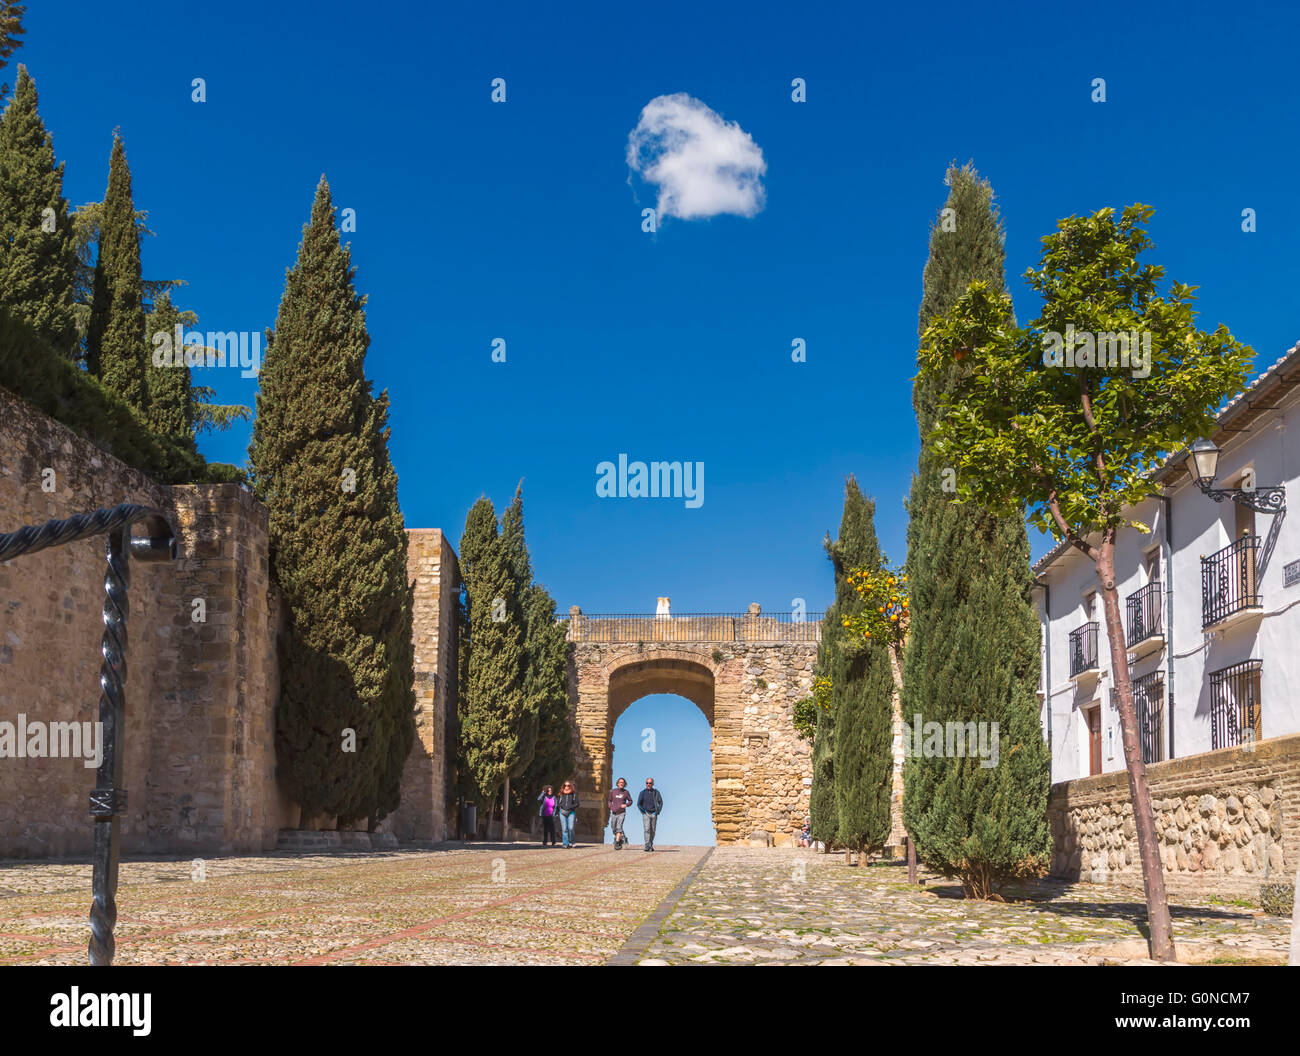 Antequera, Provinz Malaga, Andalusien, Südspanien.  Arco de Los Gigantes (Bogen der Riesen) innerhalb der Alcazaba aus gesehen Stockfoto